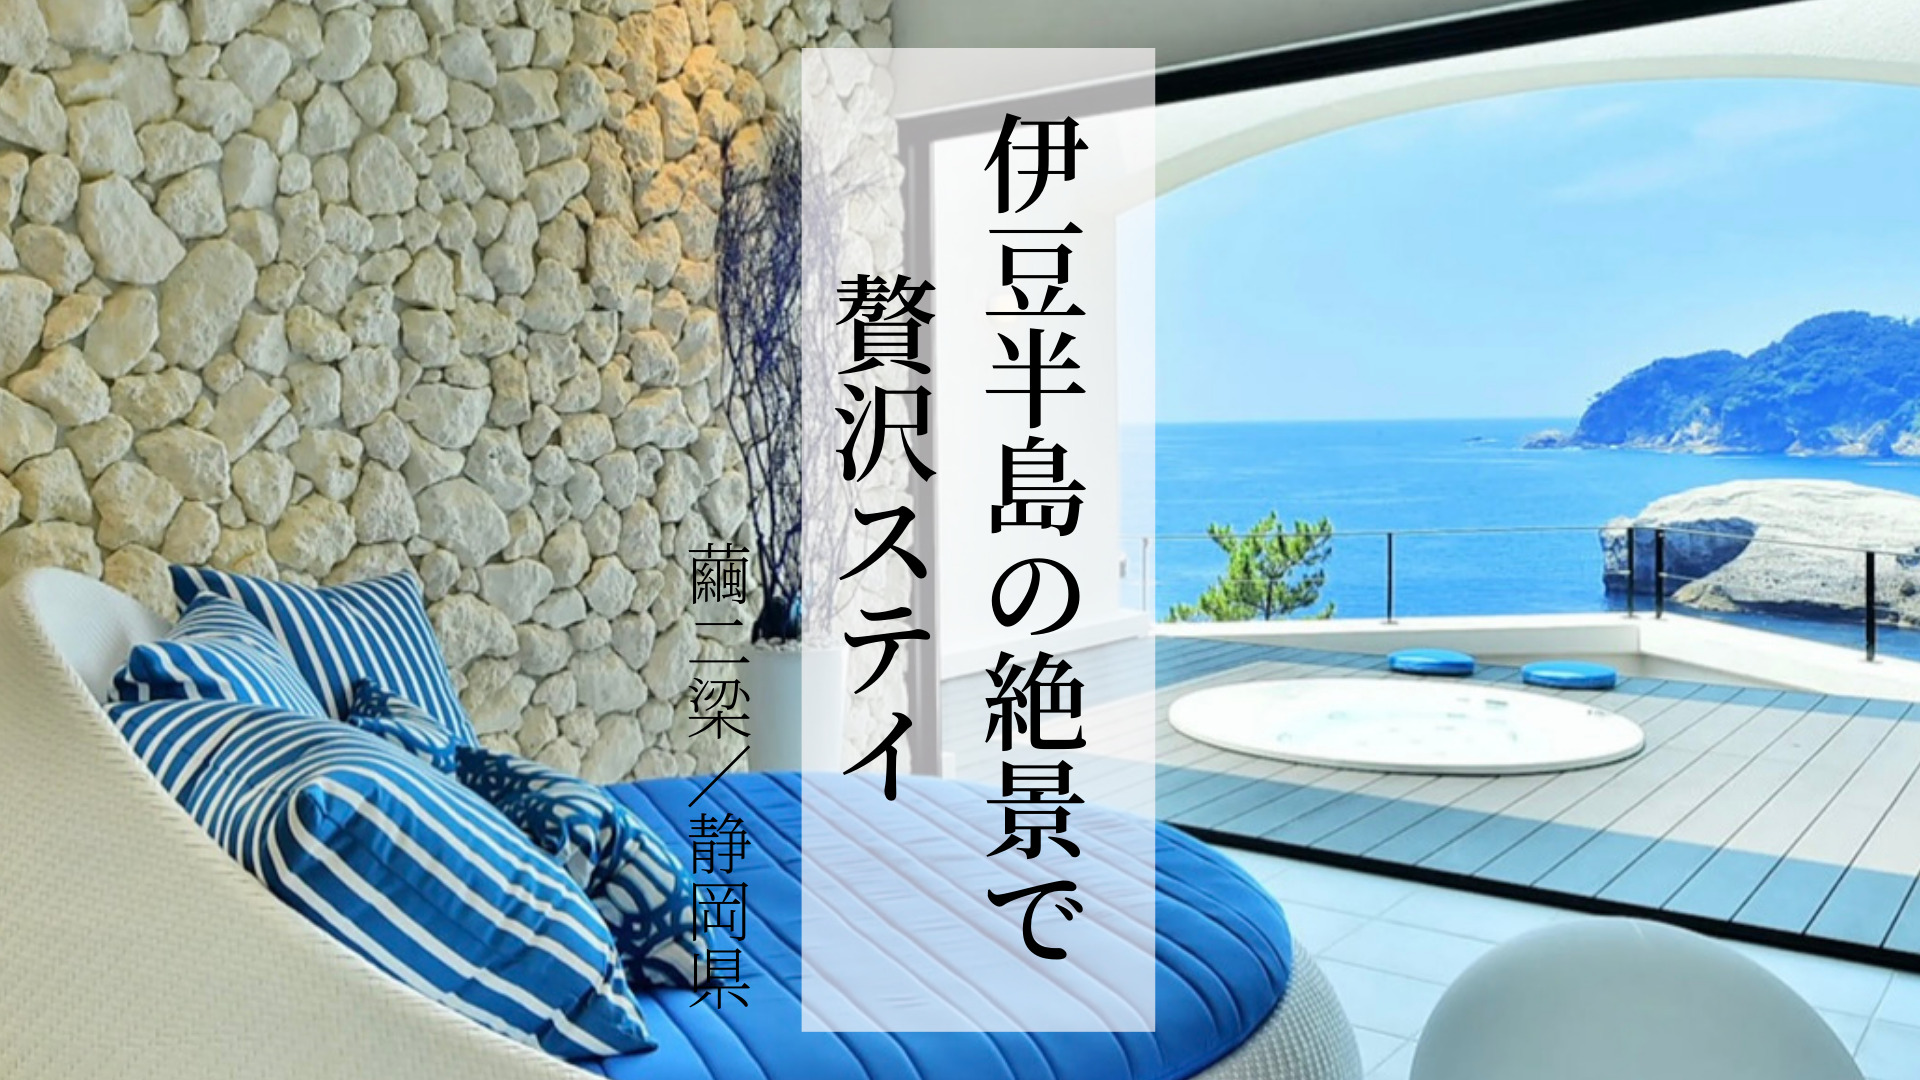 【静岡県】伊豆半島で絶景と露天風呂付客室、ユネスコ世界ジオパークで過ごす「繭二梁」